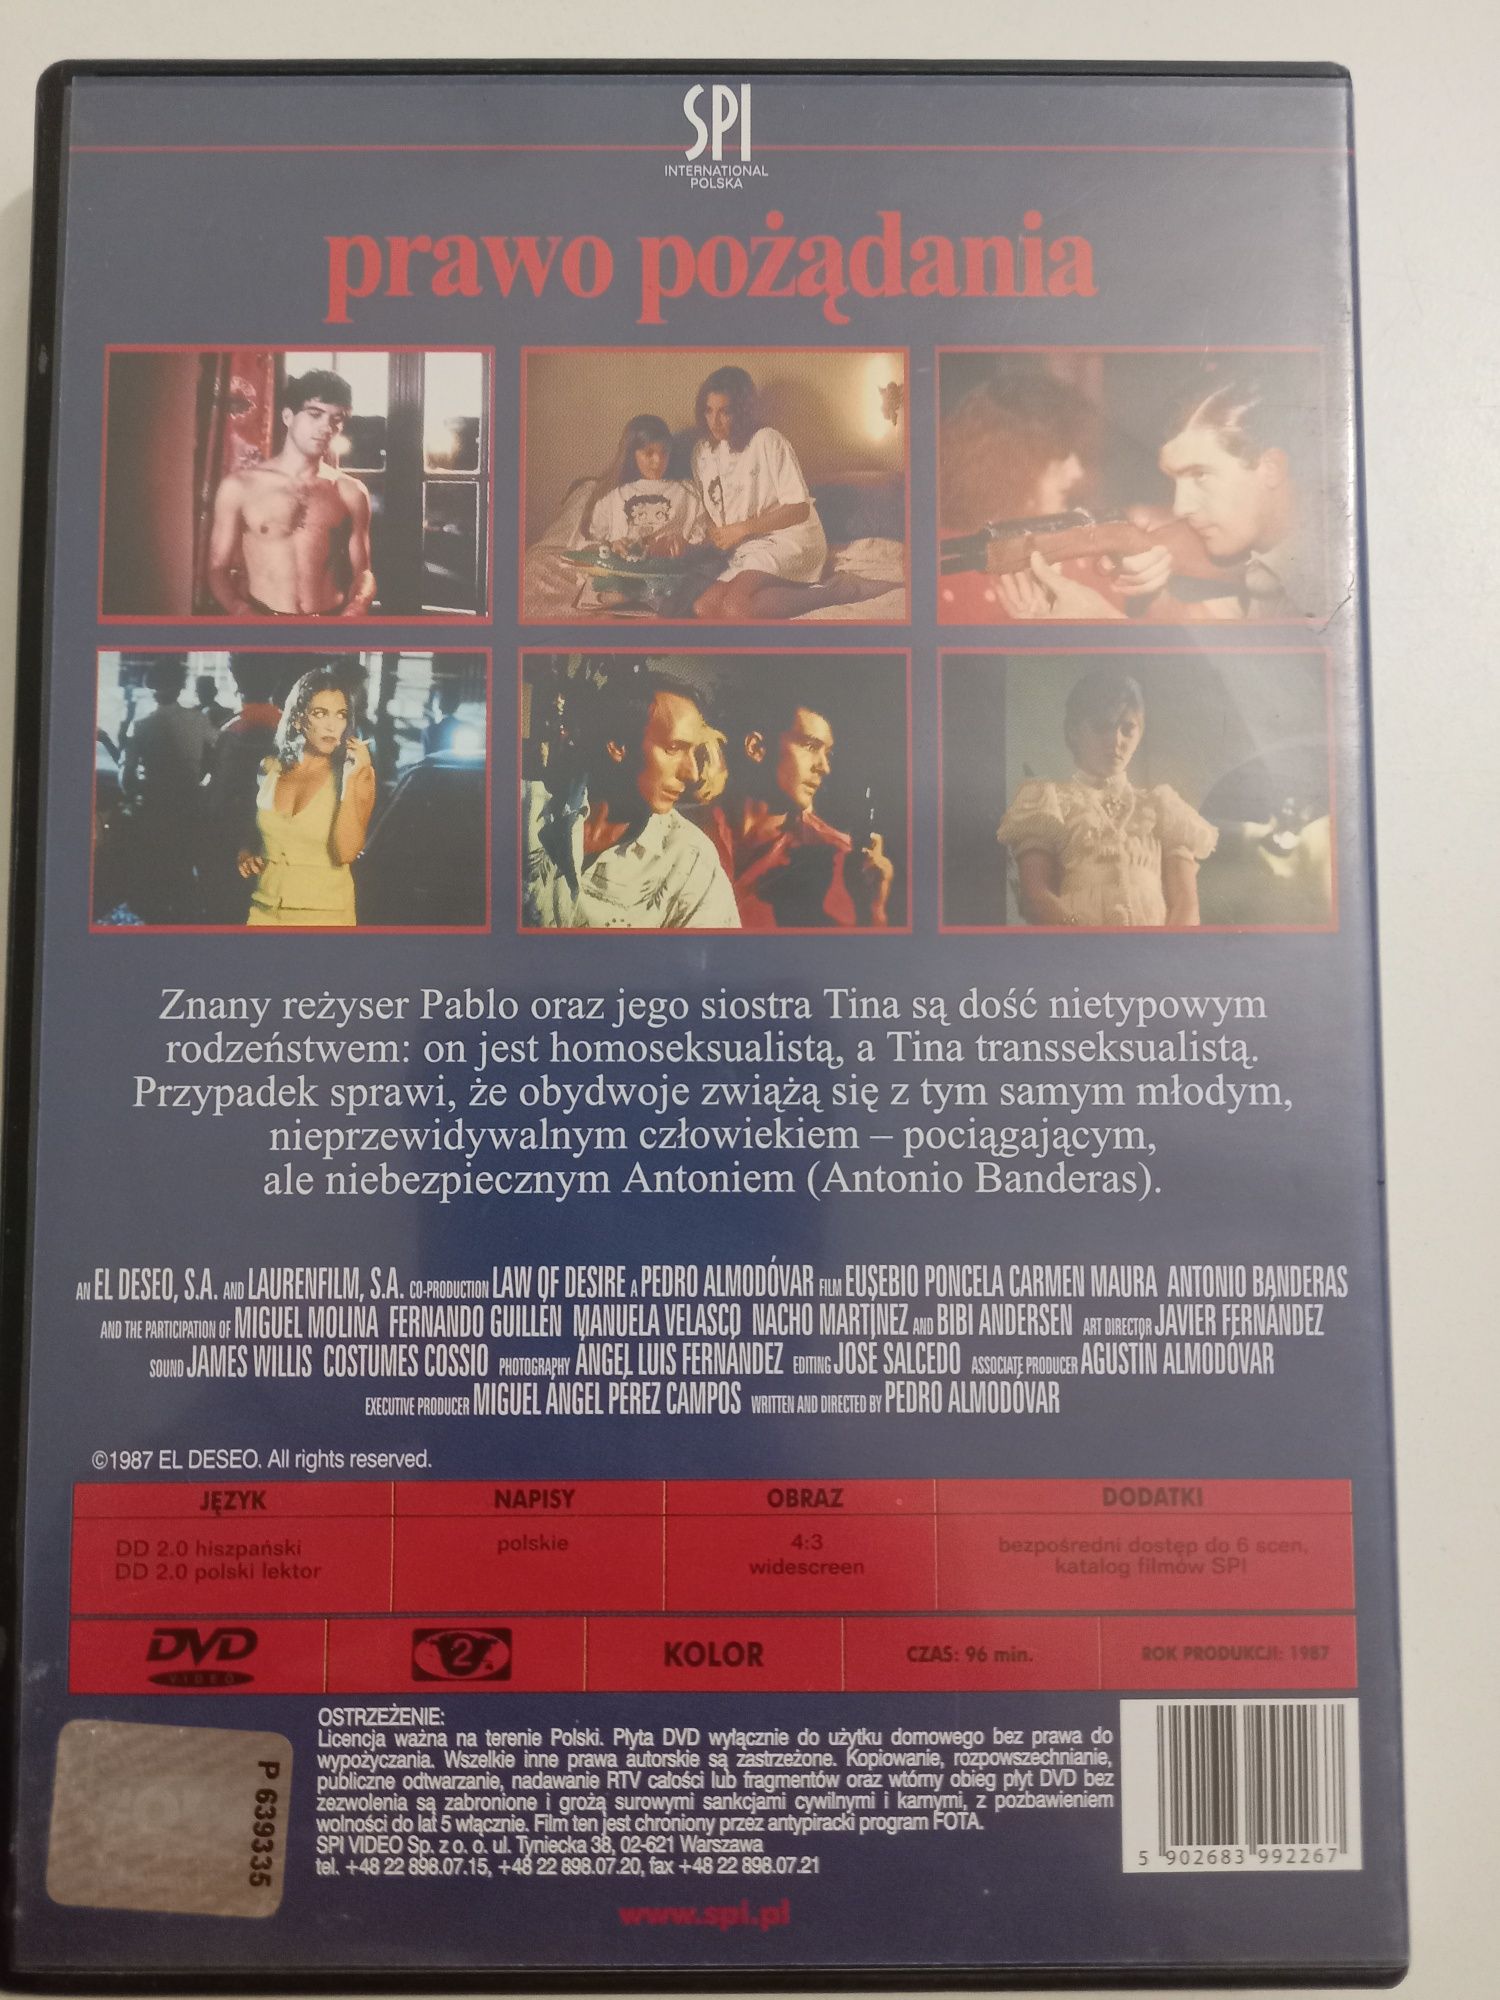 Film Prawo Pożądania DVD Video